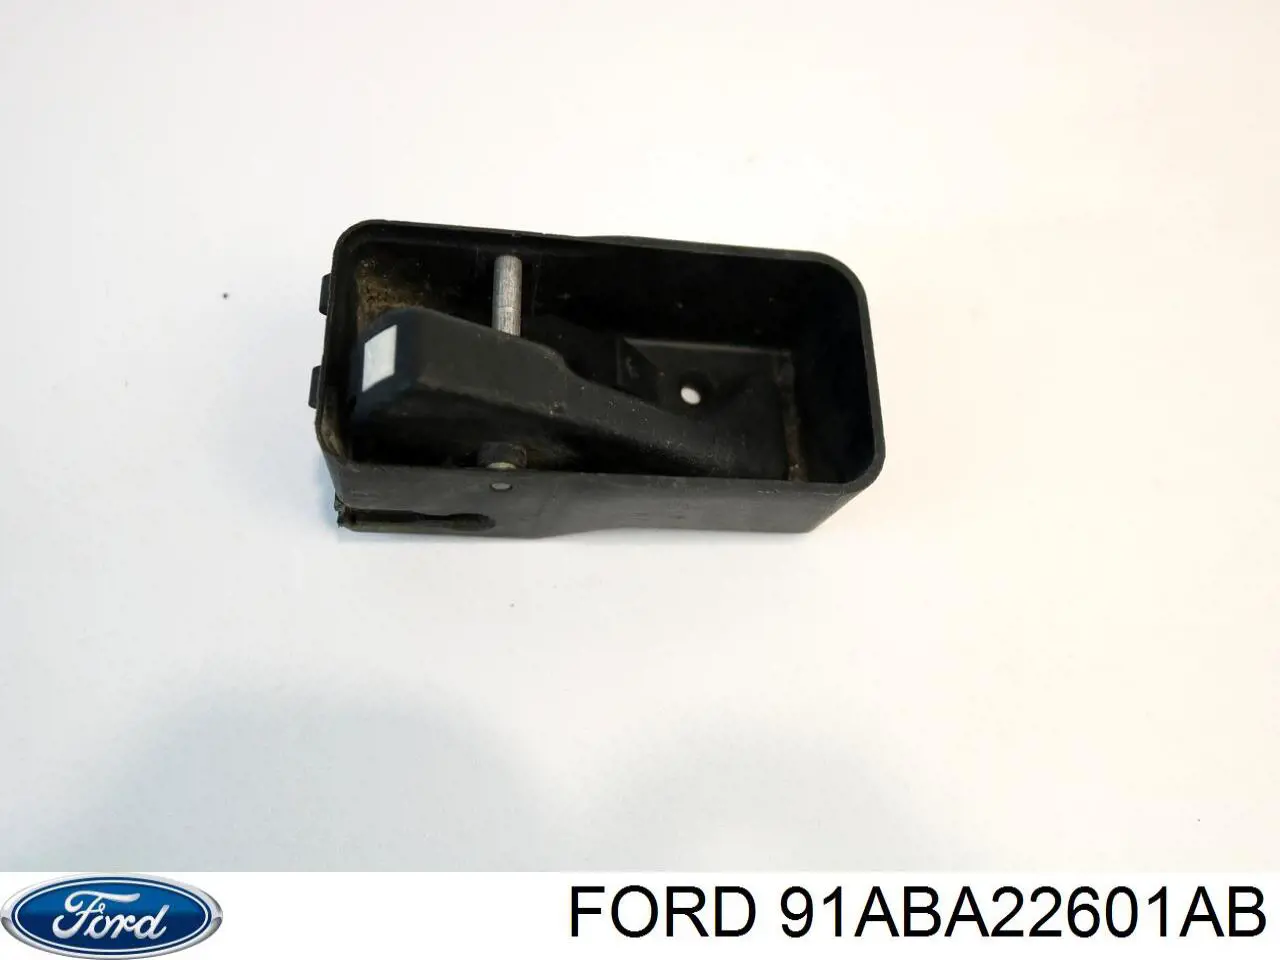 91ABA22601AB Ford manecilla de puerta de batientes, izquierda interior